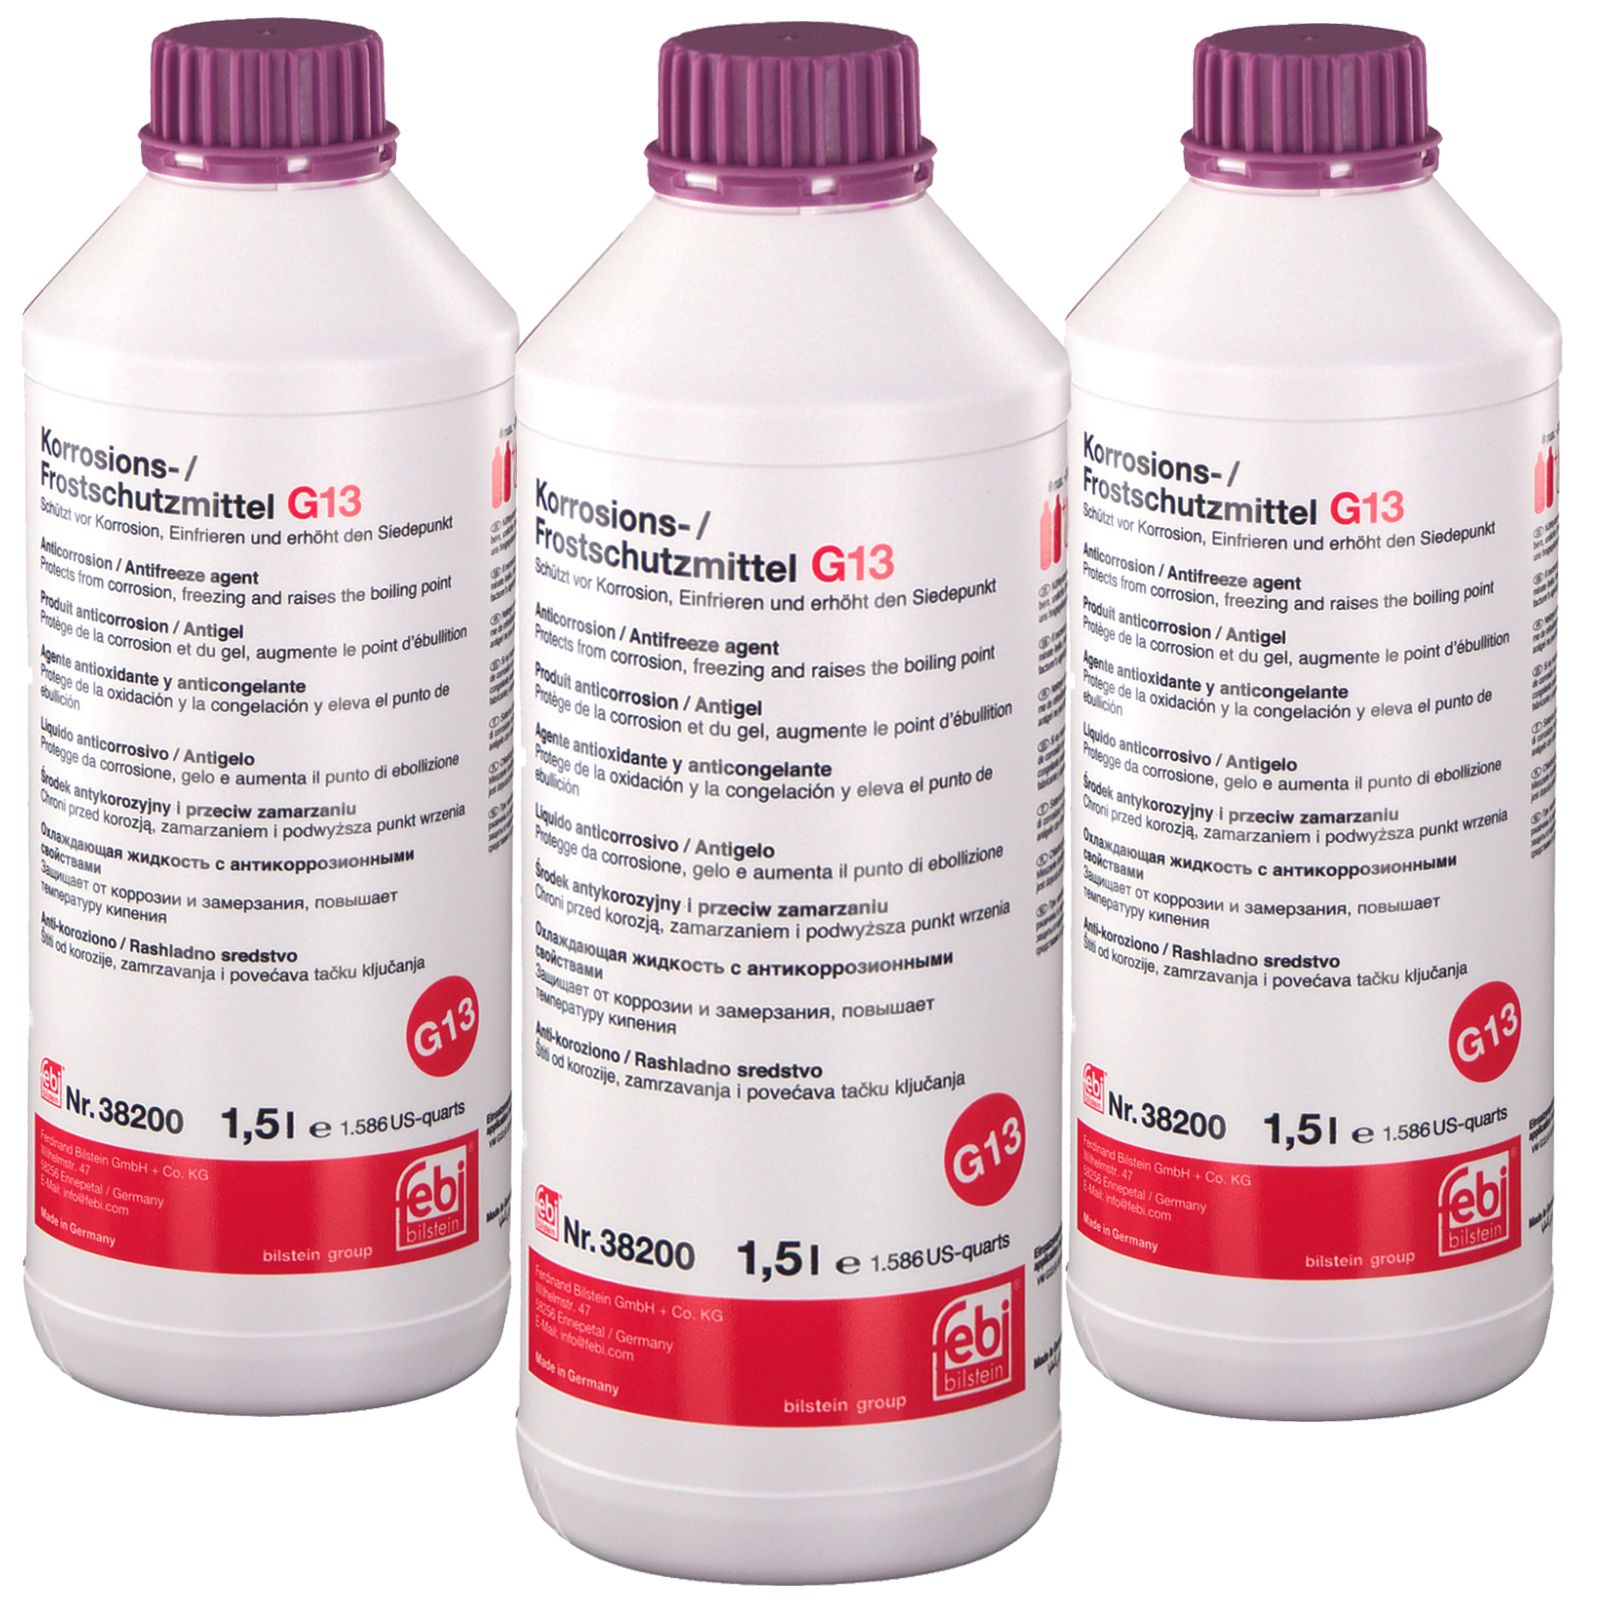 FEBI 38200 Frostschutzmittel G13 (Konzentrat) 1,5L Flasche